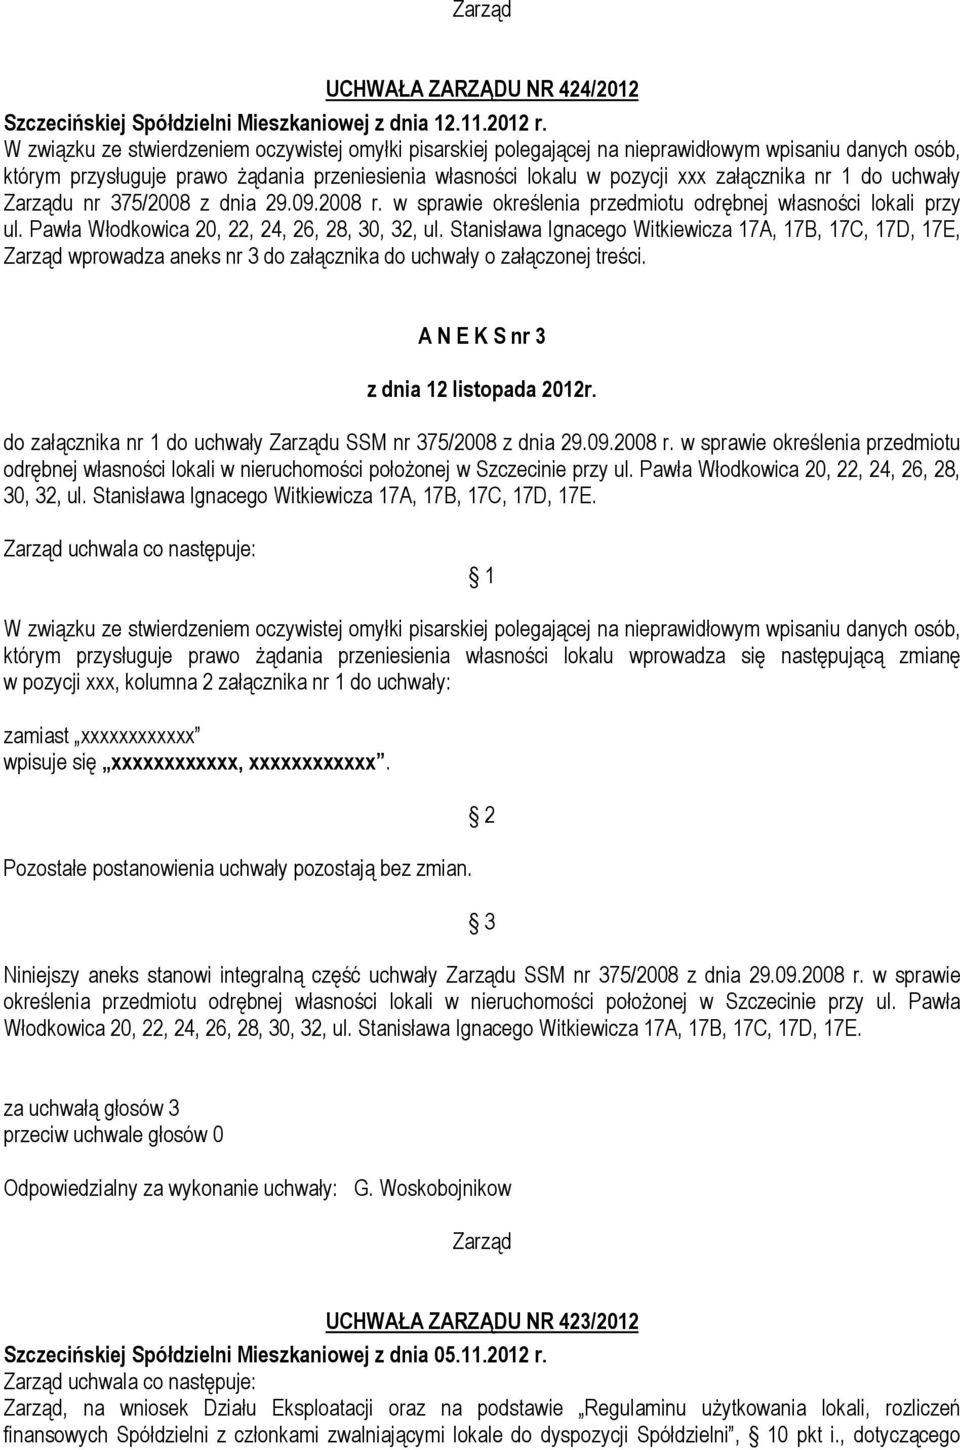 1 do uchwały u nr 375/2008 z dnia 29.09.2008 r. w sprawie określenia przedmiotu odrębnej własności lokali przy ul. Pawła Włodkowica 20, 22, 24, 26, 28, 30, 32, ul.